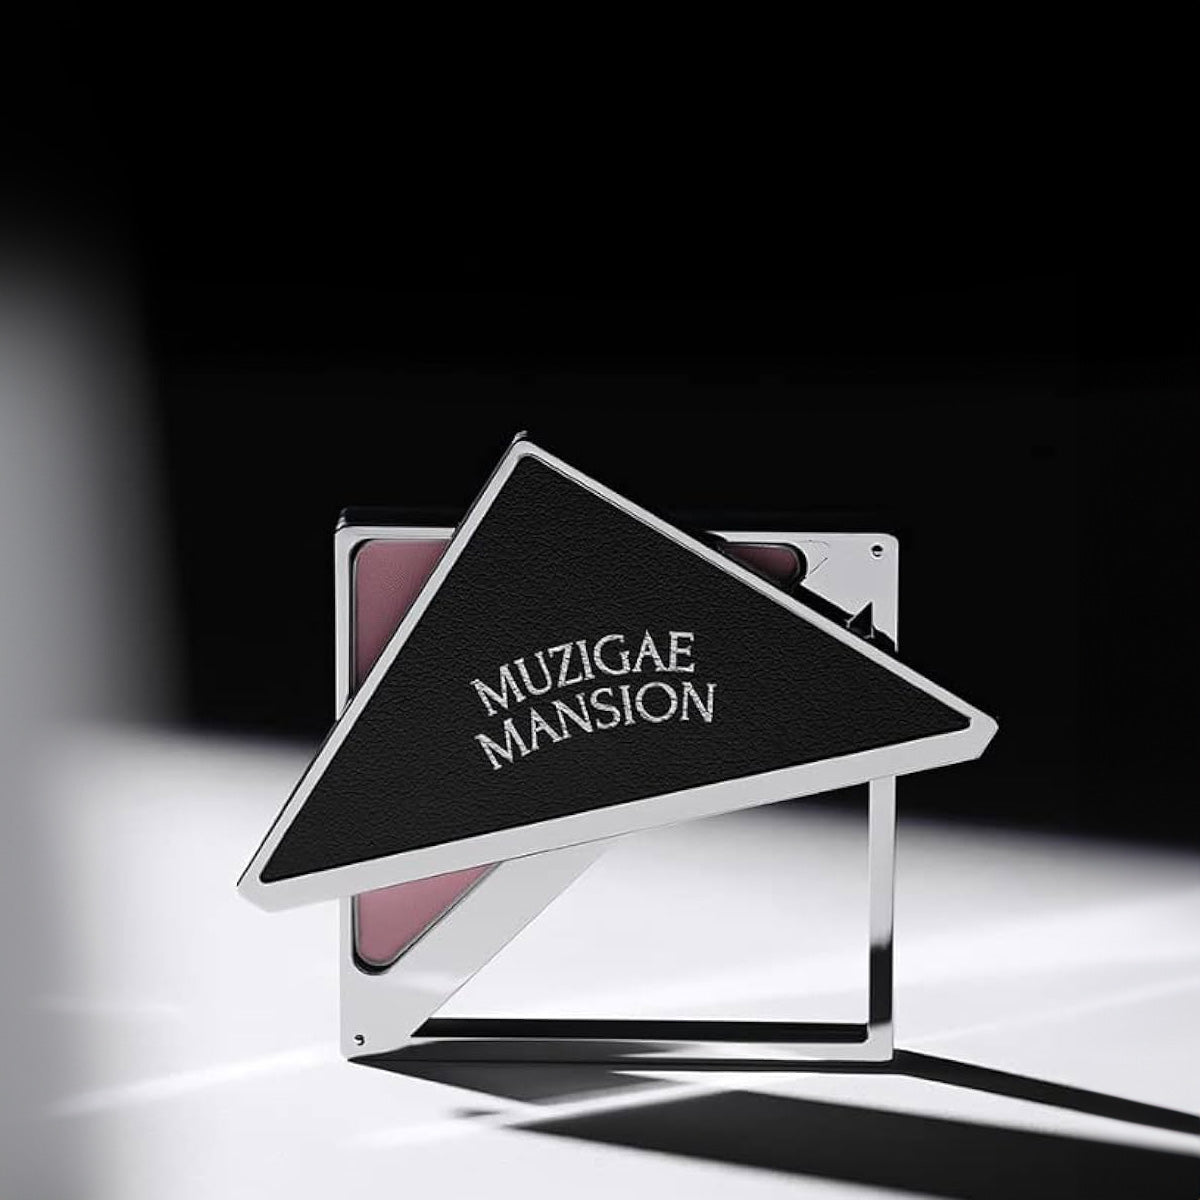 MUZIGAE-MANSION-Fitting-Blush.jpg